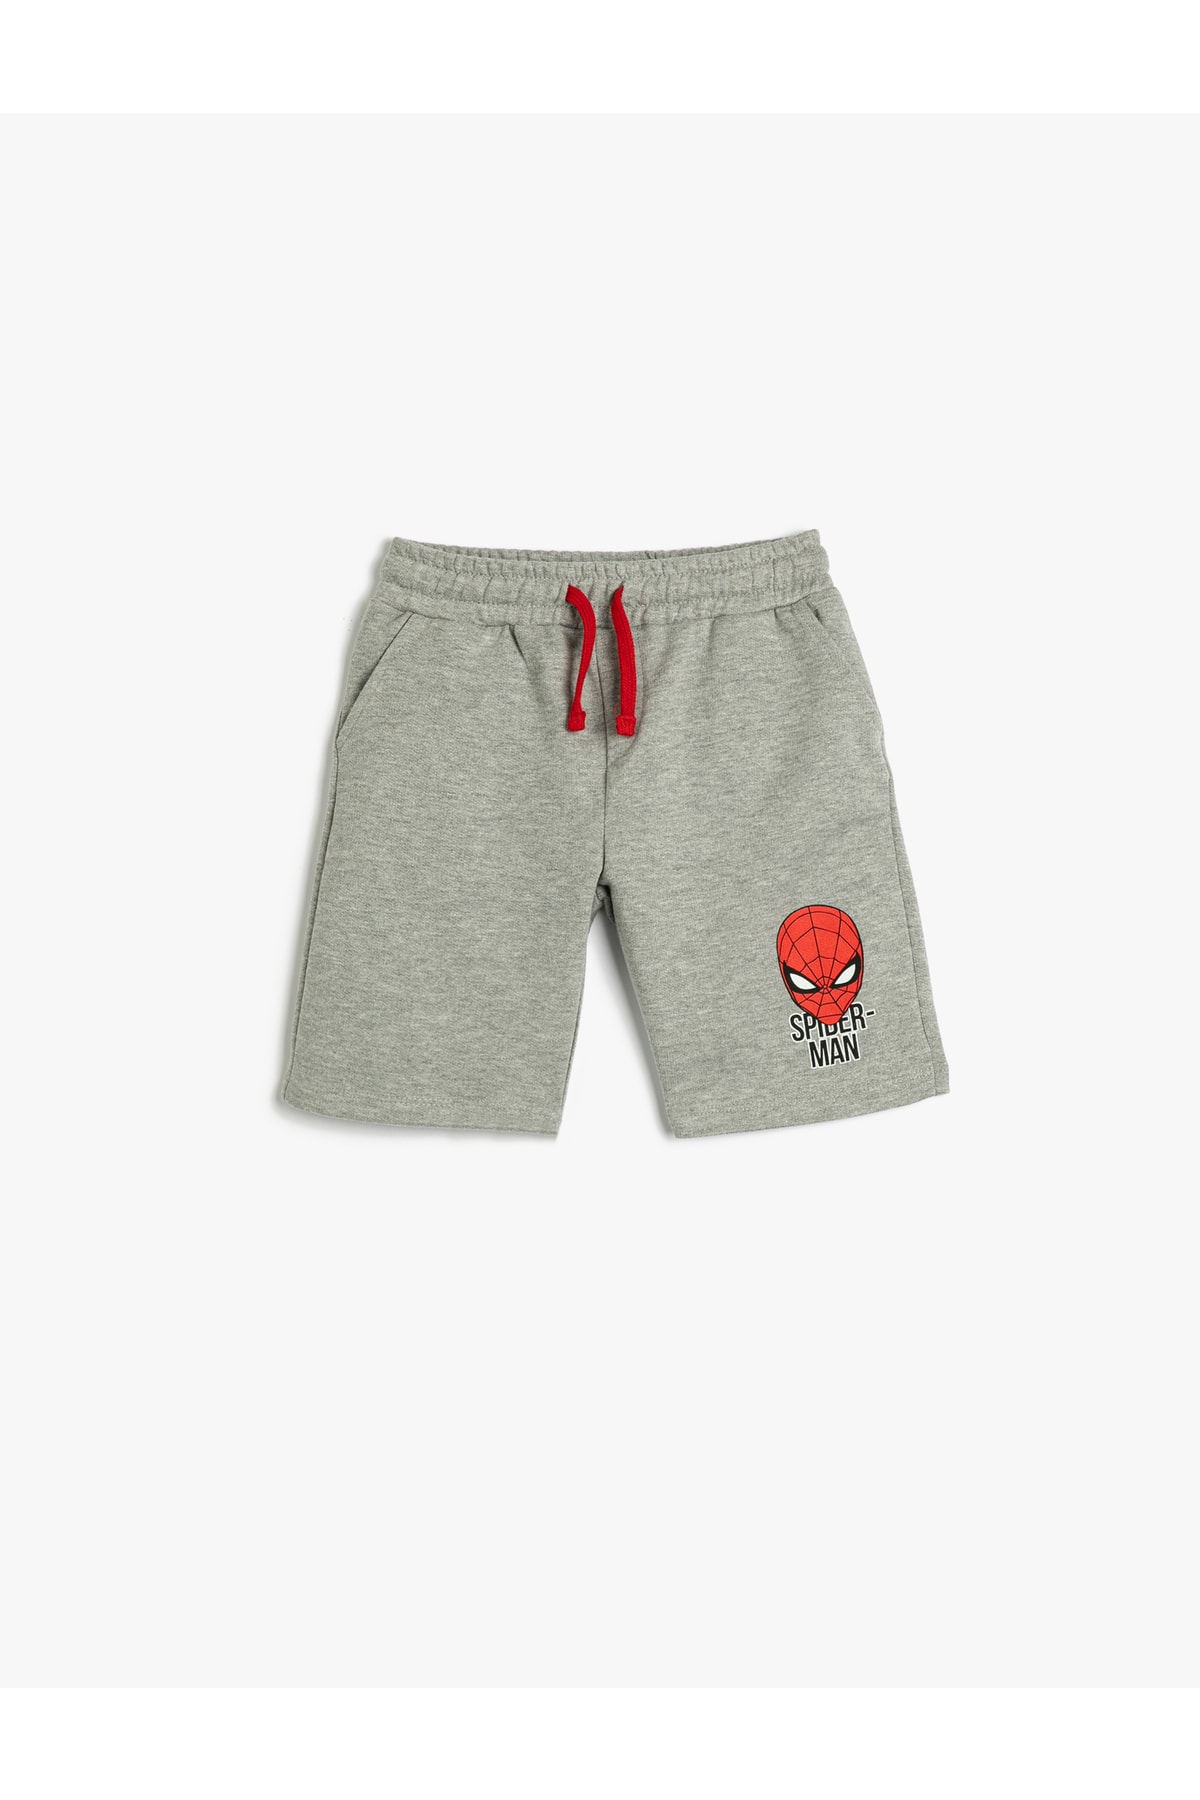 Levně Koton Spider-Man Shorts Licensed Tie Waist Pocket Cotton Cotton